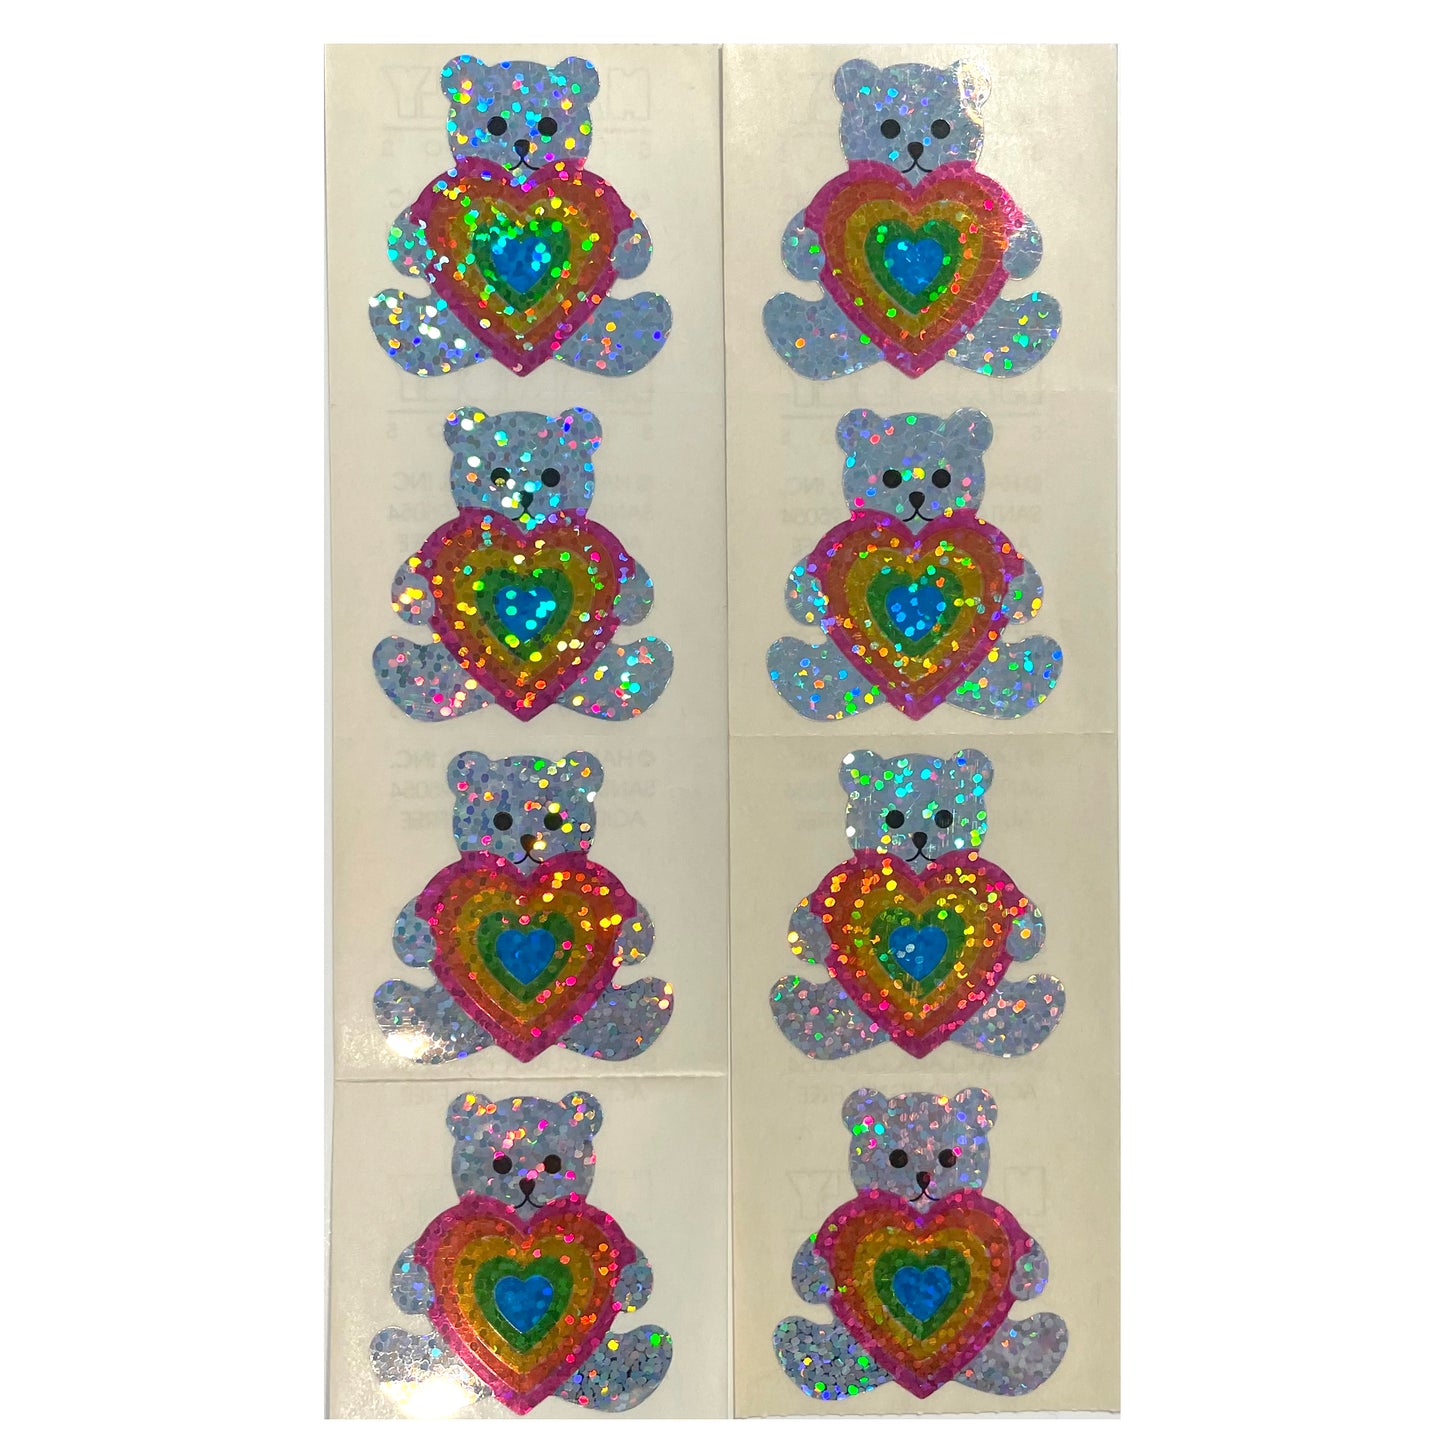 HAMBLY: Teddy Bear with Rainbow Heart stickers *RARE*